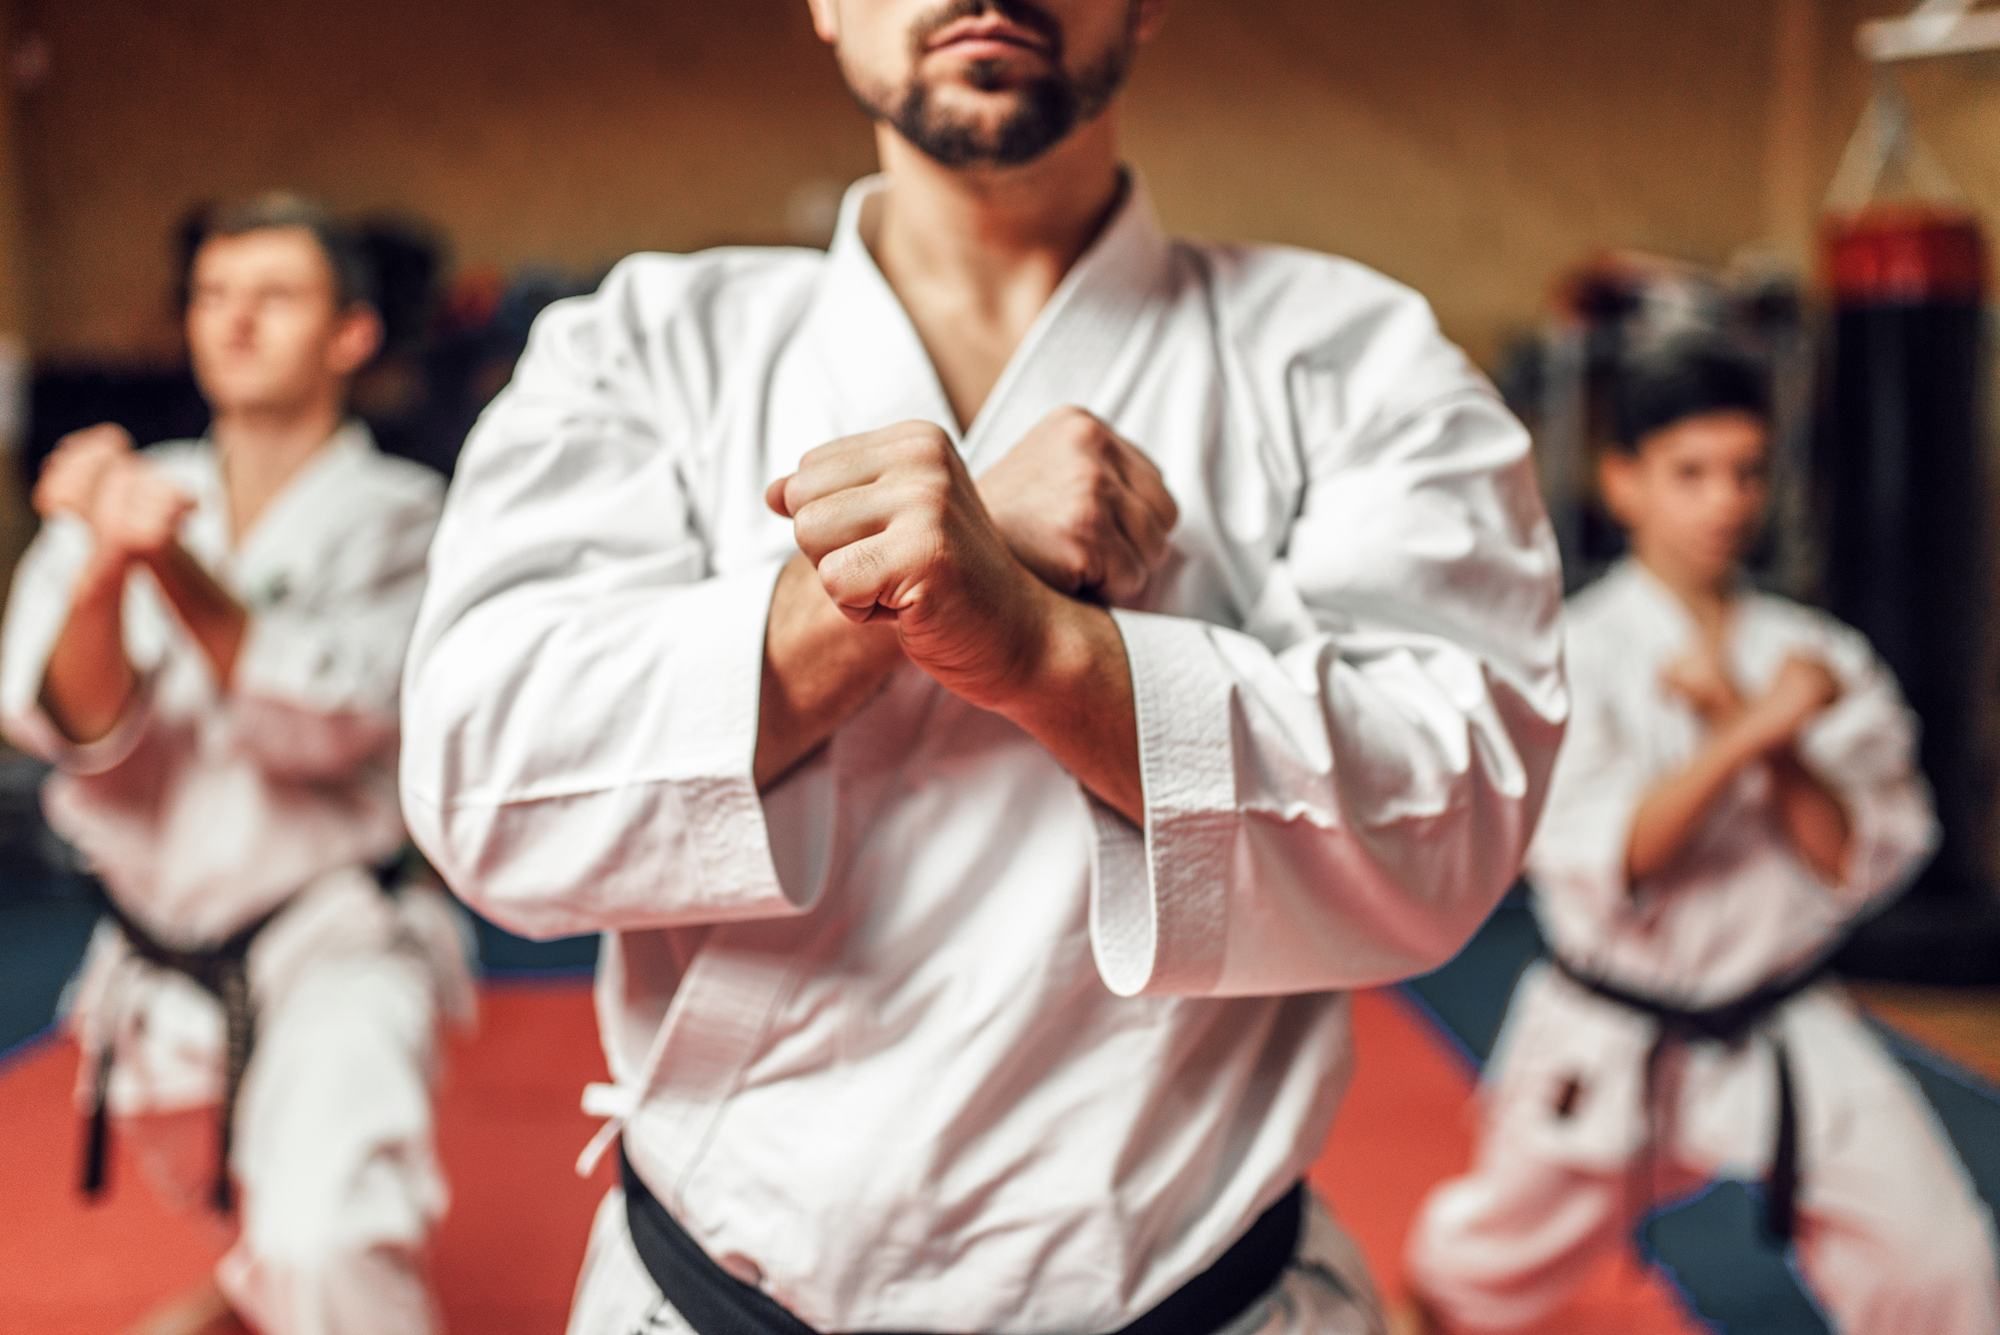 USA Taekwondo ruling is seen as an aid for sex abuse survivors.